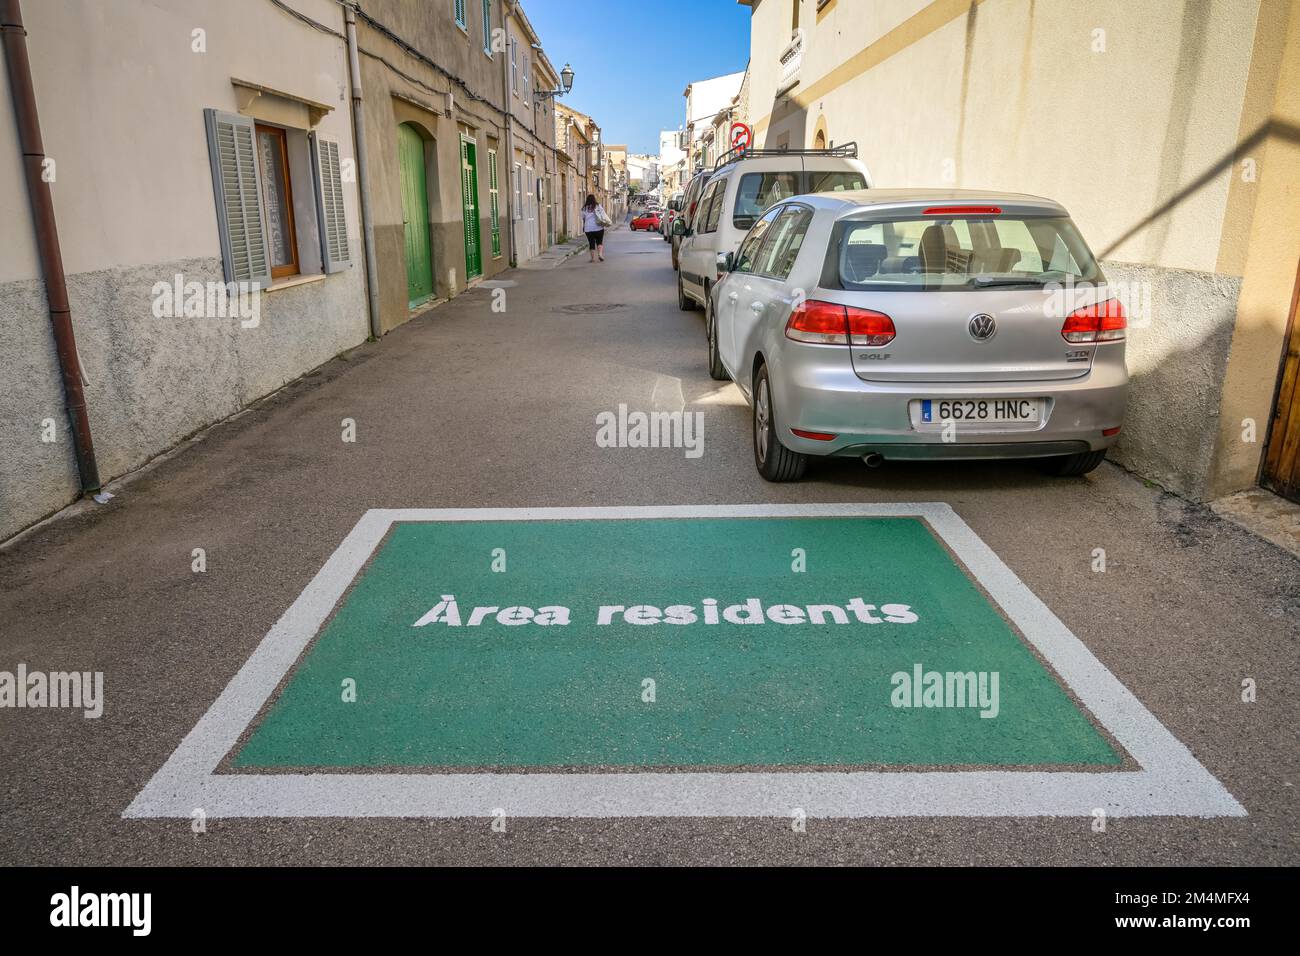 Straße, Bemalung, Anwohnerparkzone, Residentes del área, Arta, Mallorca, España Foto de stock